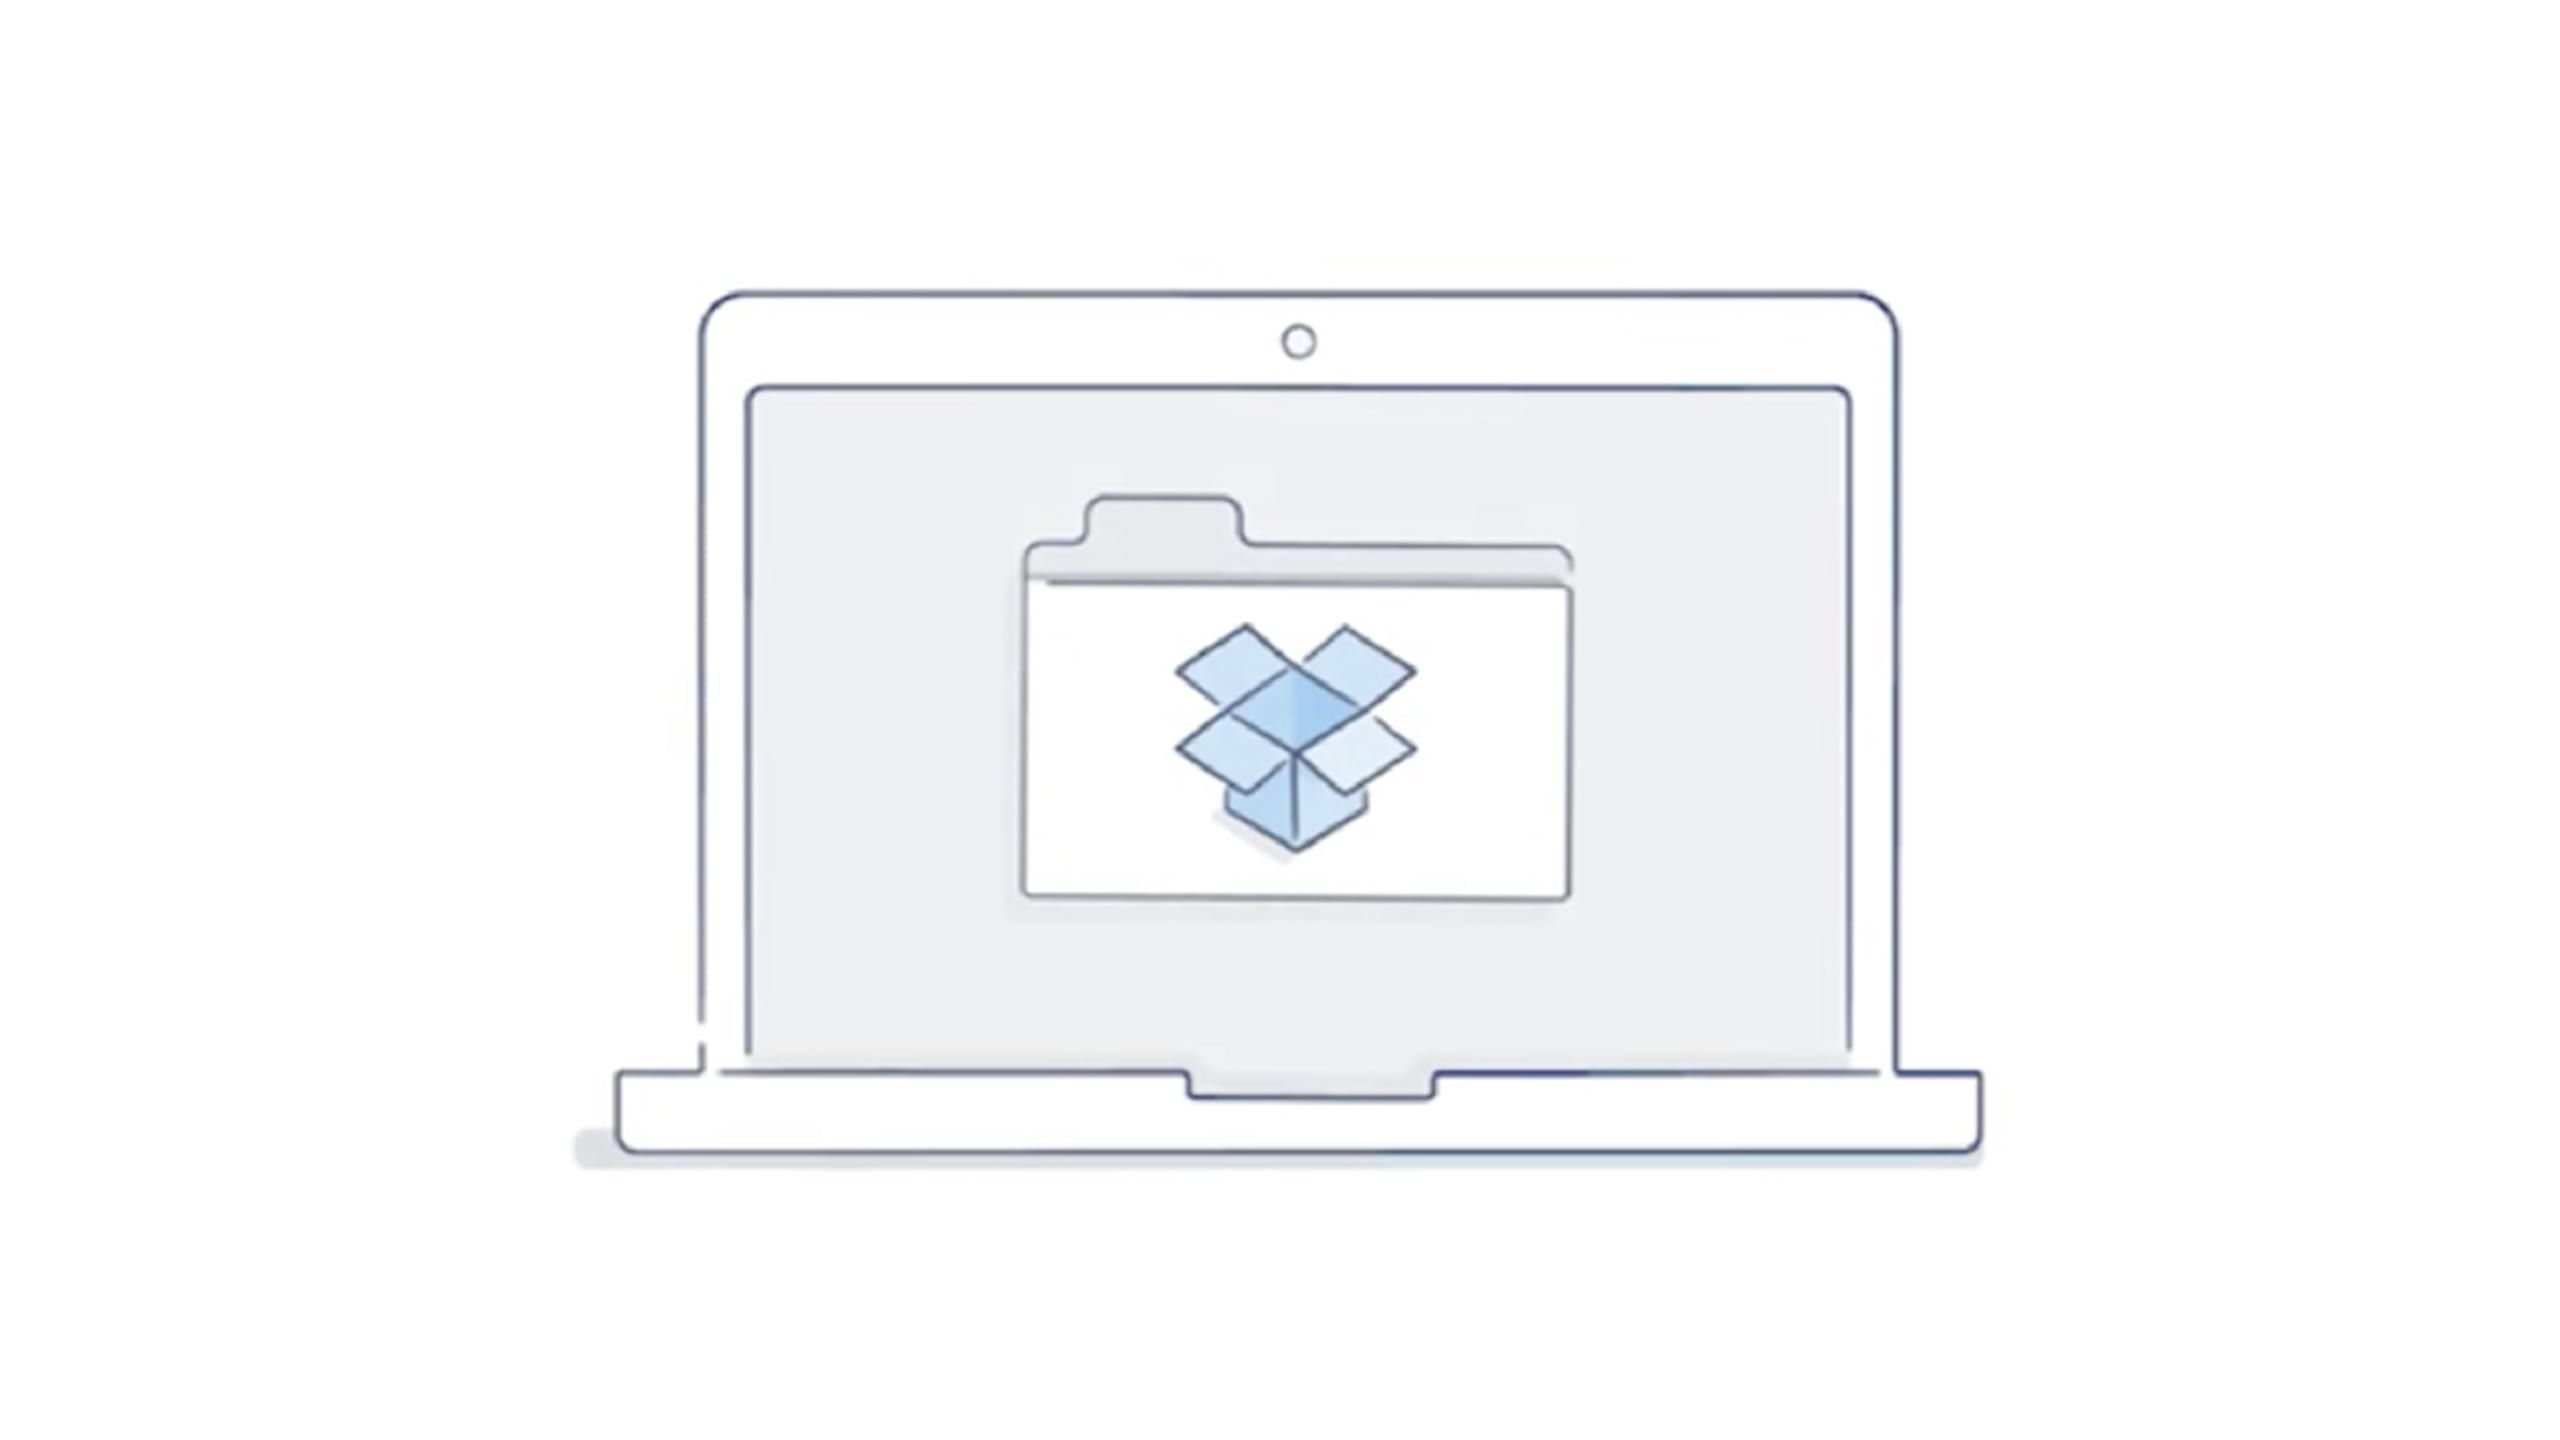 A Dropbox folder icon shown on a laptop screen